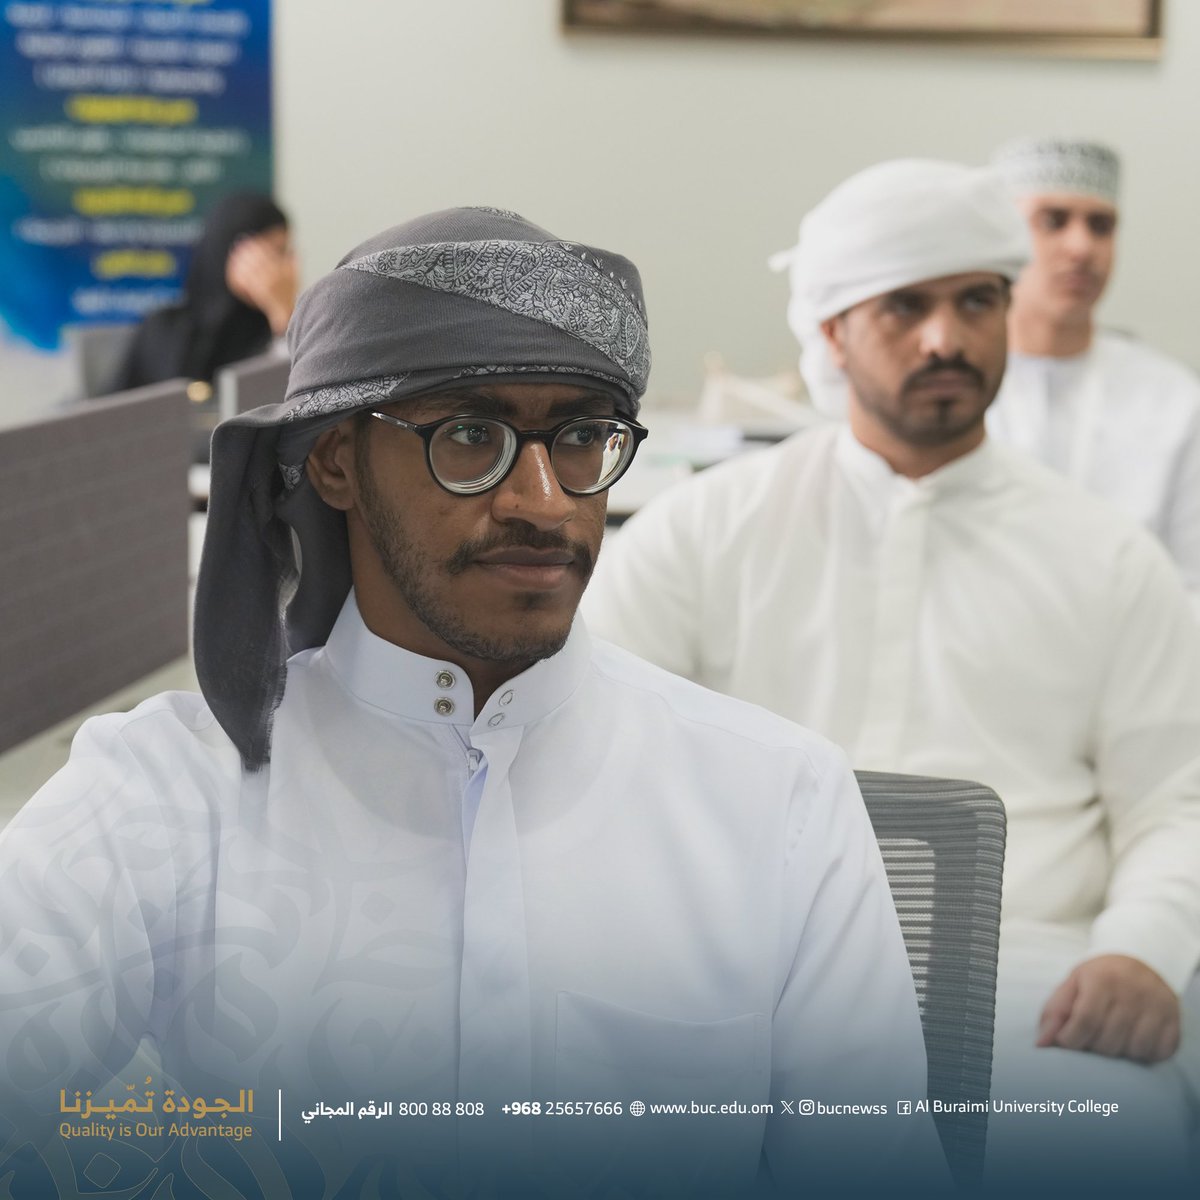 مؤسسة انجاز عمان تقدم ورشة في مهارات جوجل والتي تعد أحد البرامج المقدمة للطلبة المشاركين في برنامج الشركة.

#كلية_البريمي_الجامعية